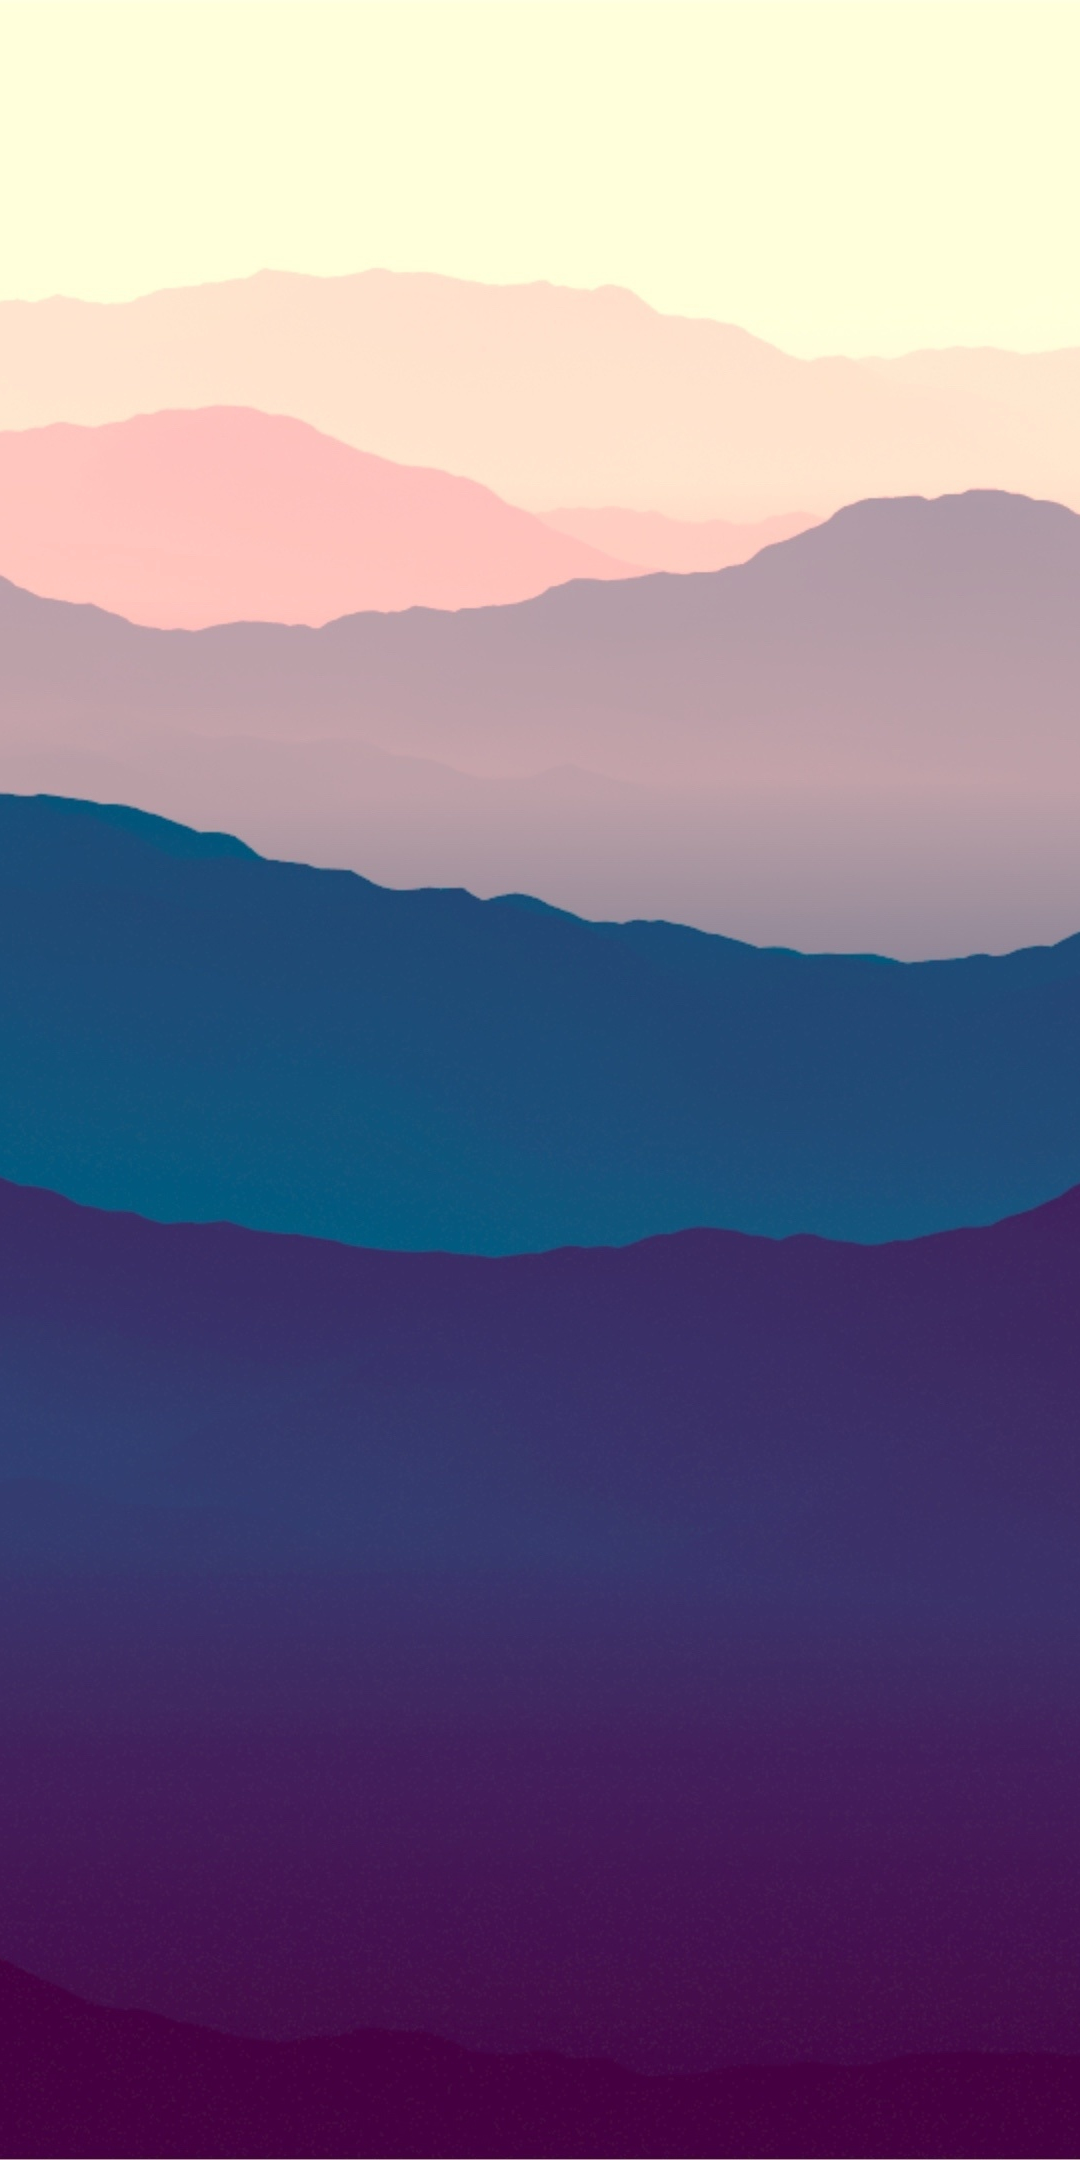 Mountains, landscape, purple sunset, gradient, horizon, 1080x2160 wallpaper